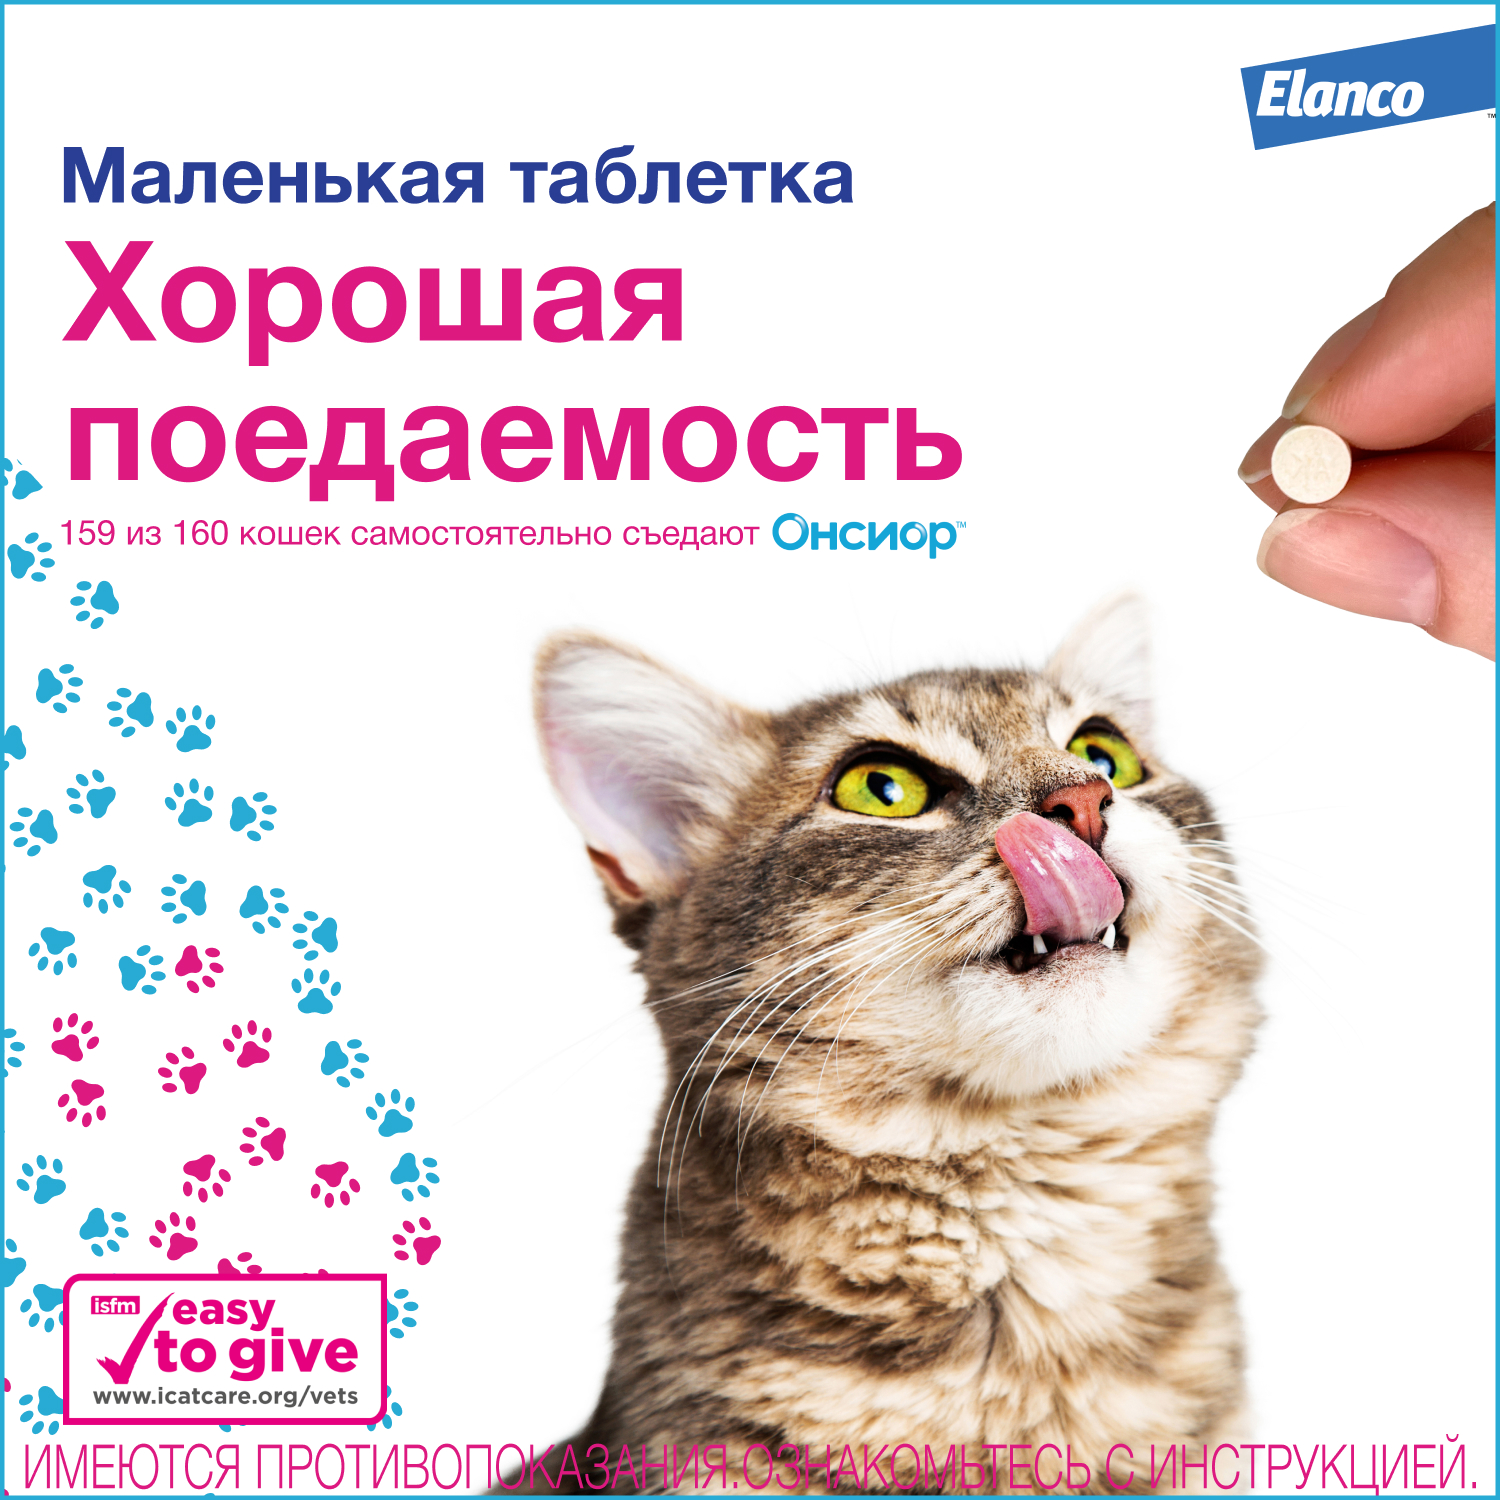 Препарат для кошек Elanco Онсиор противовоспалительный 6мг*6таблеток - фото 7